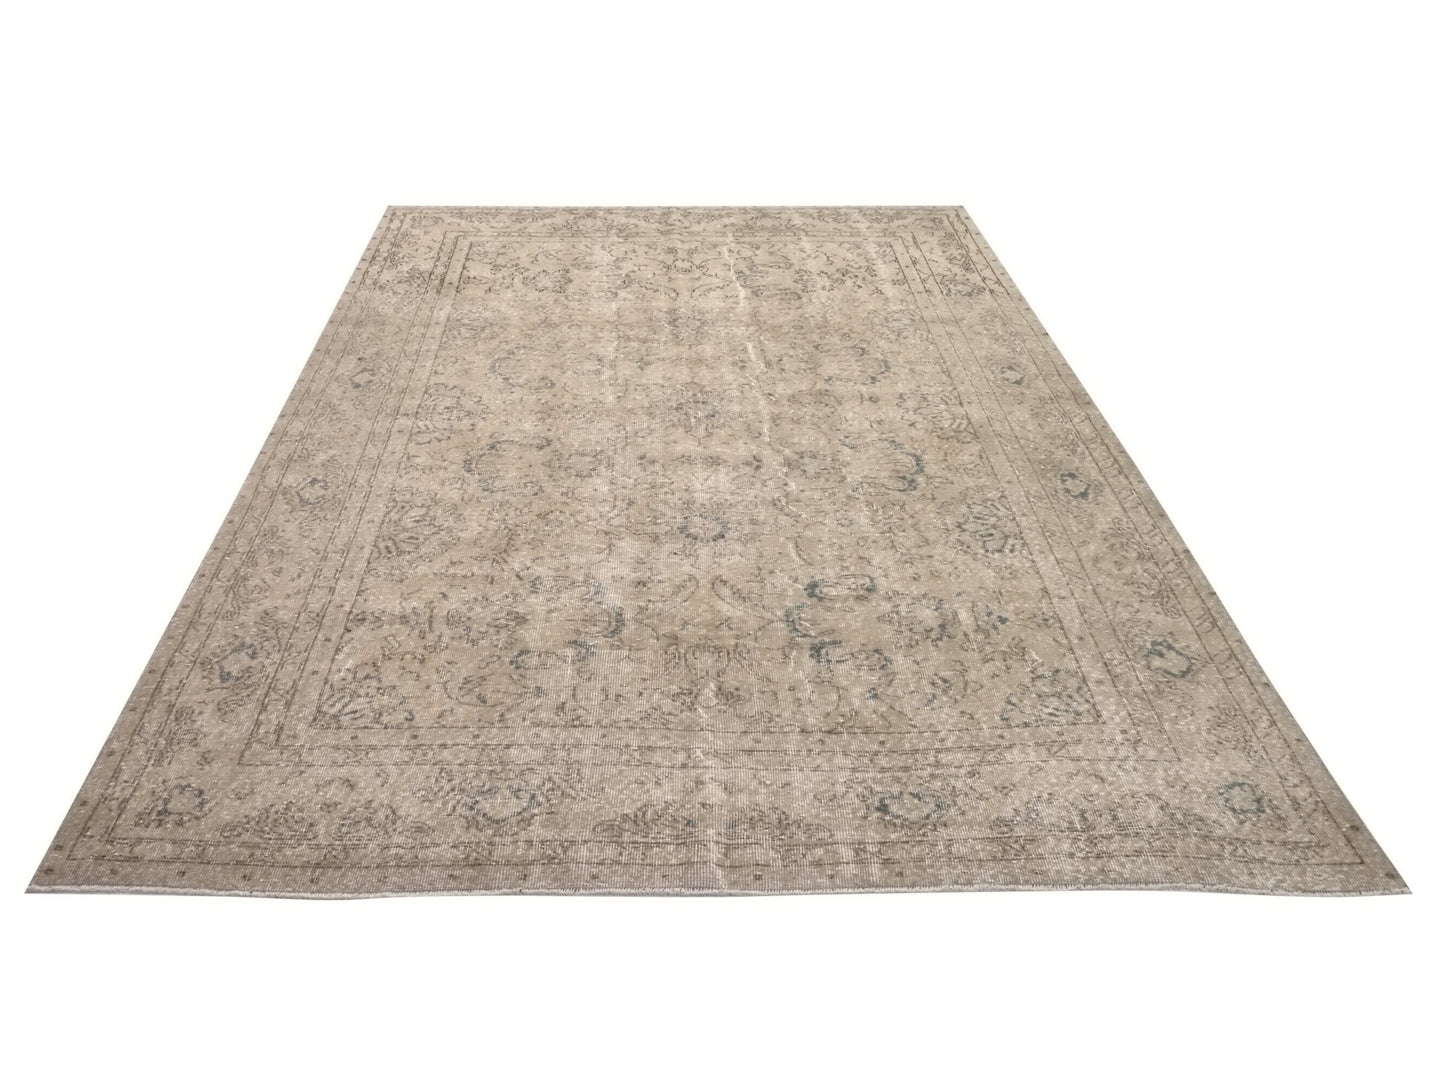 Antique Oushak Carpet rug, Vintage Turkish Area Rug, 7x11 Rug, Handmade Living room Rug, Turkish rug 7x11, One of a kind rug, 9588